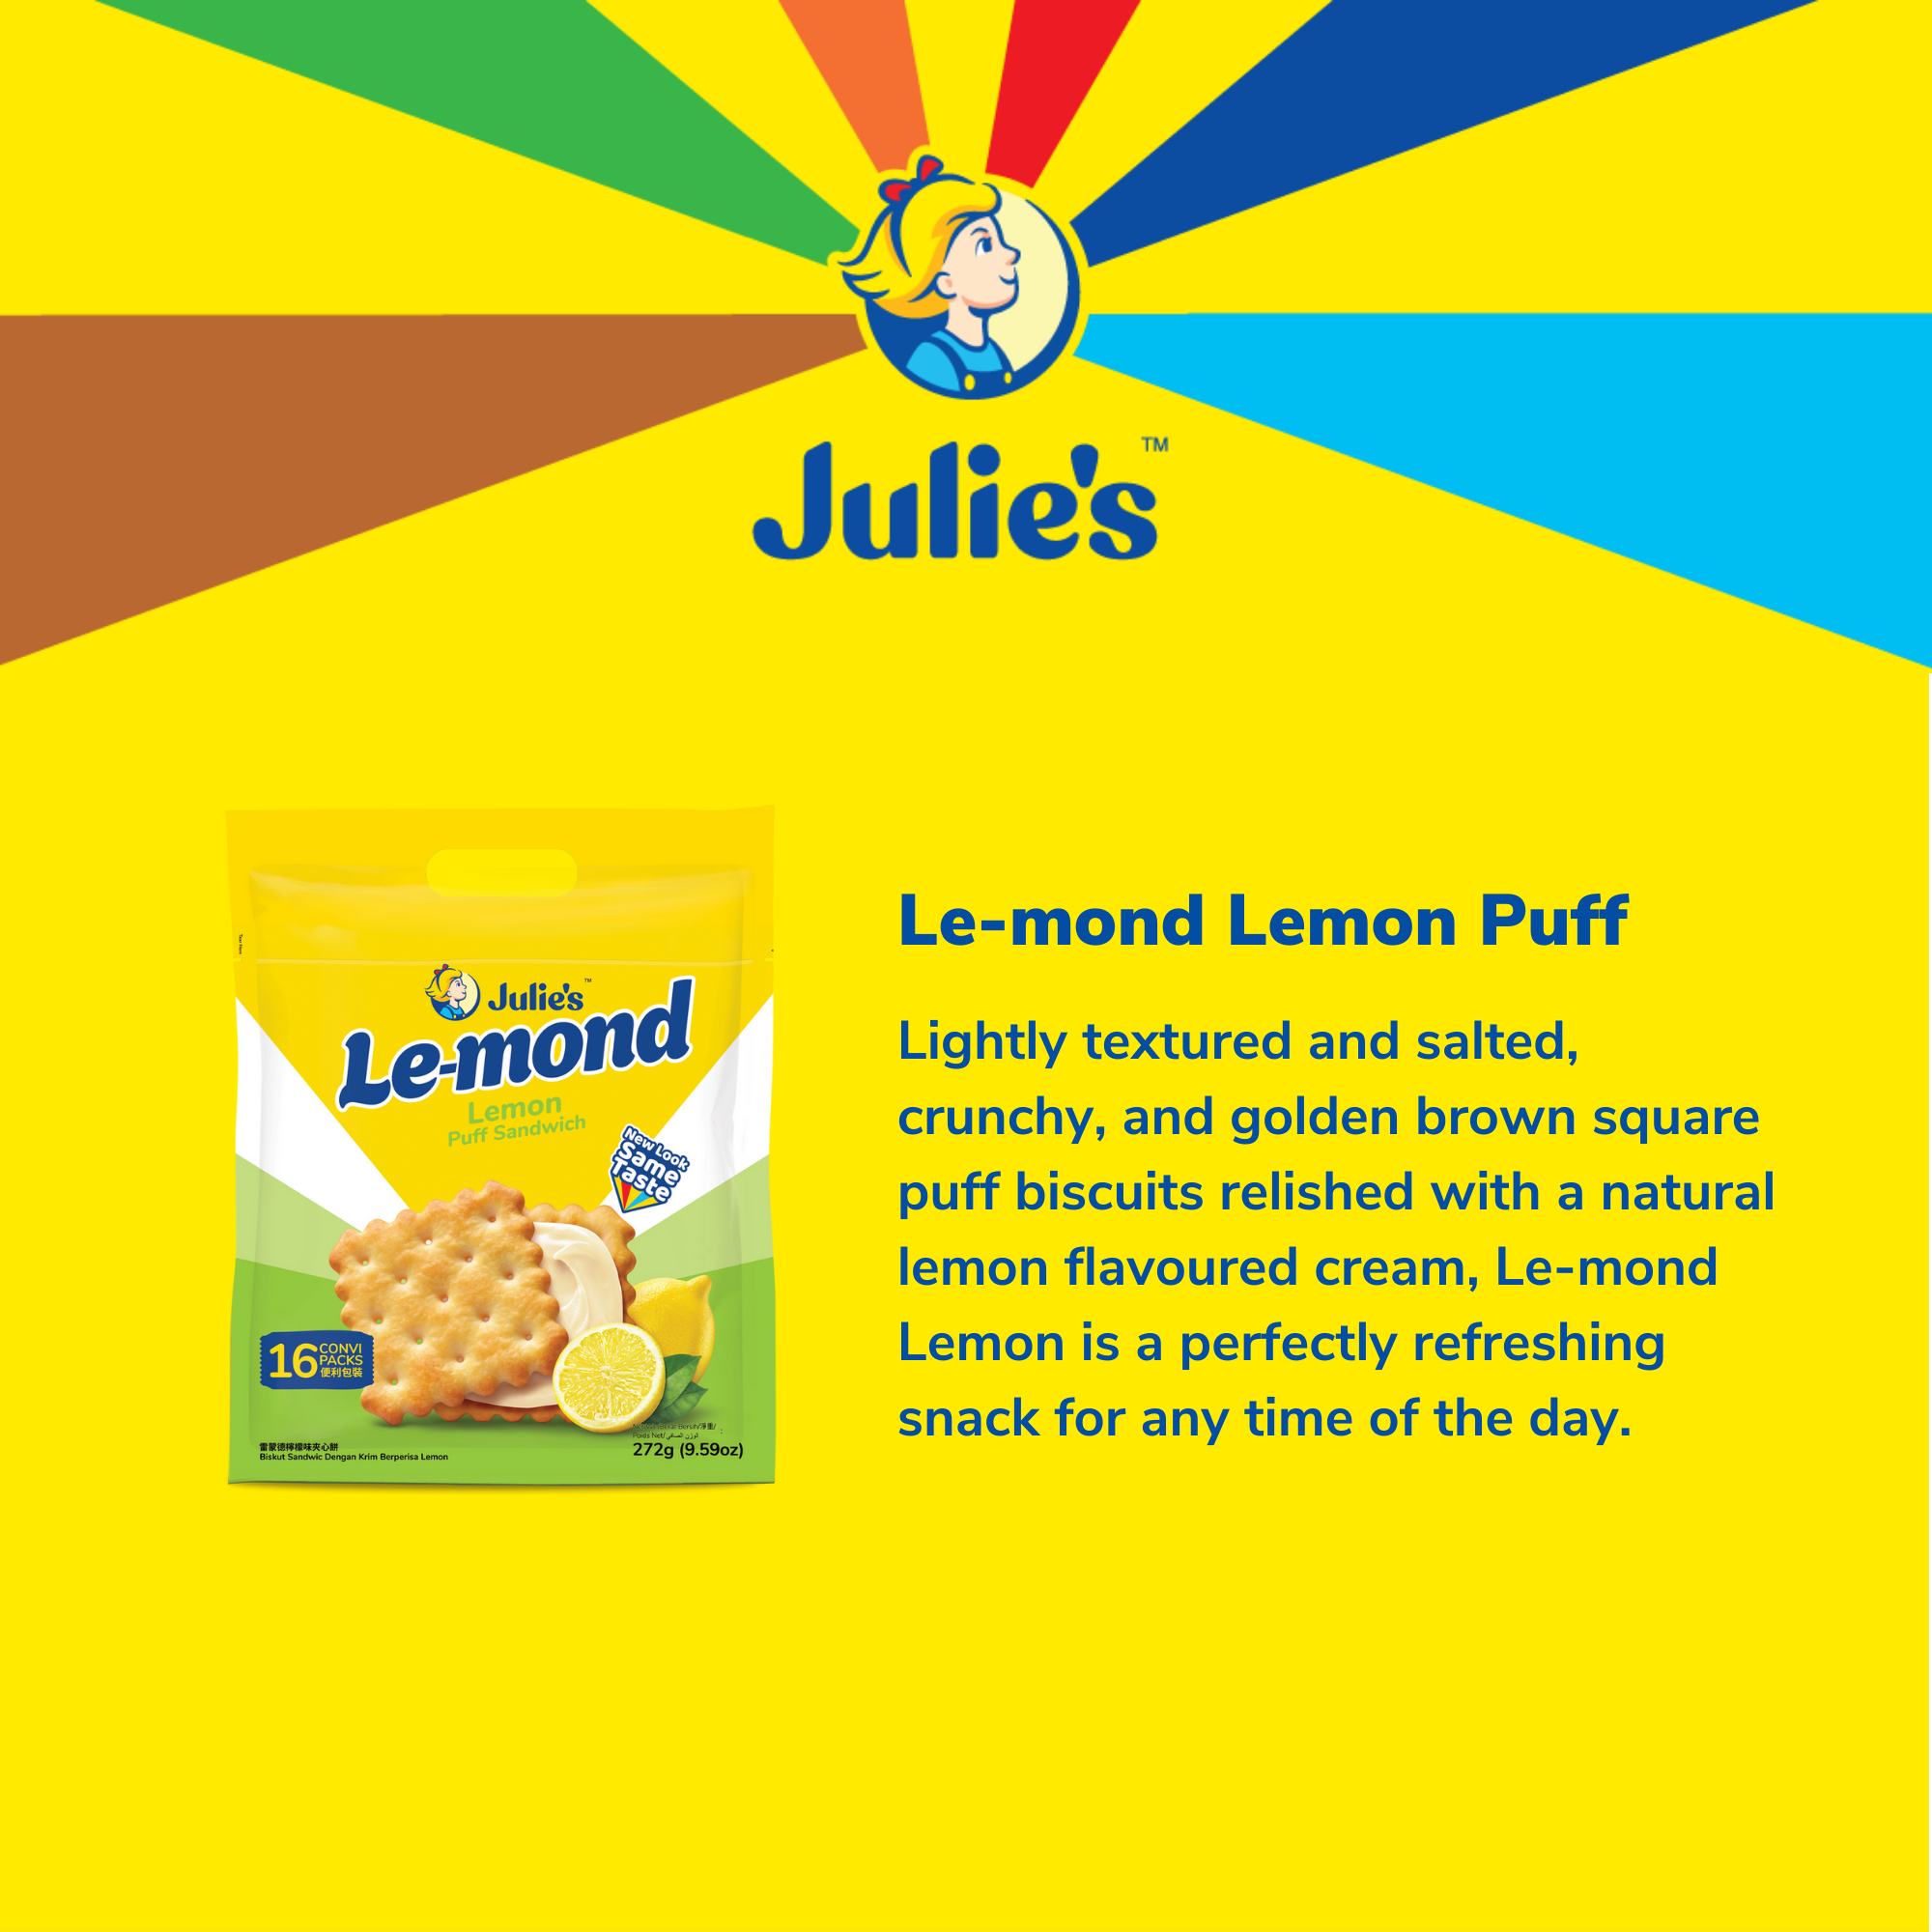 Julie's Le-mond Lemon Puff Sandwich 272g x 2 packs